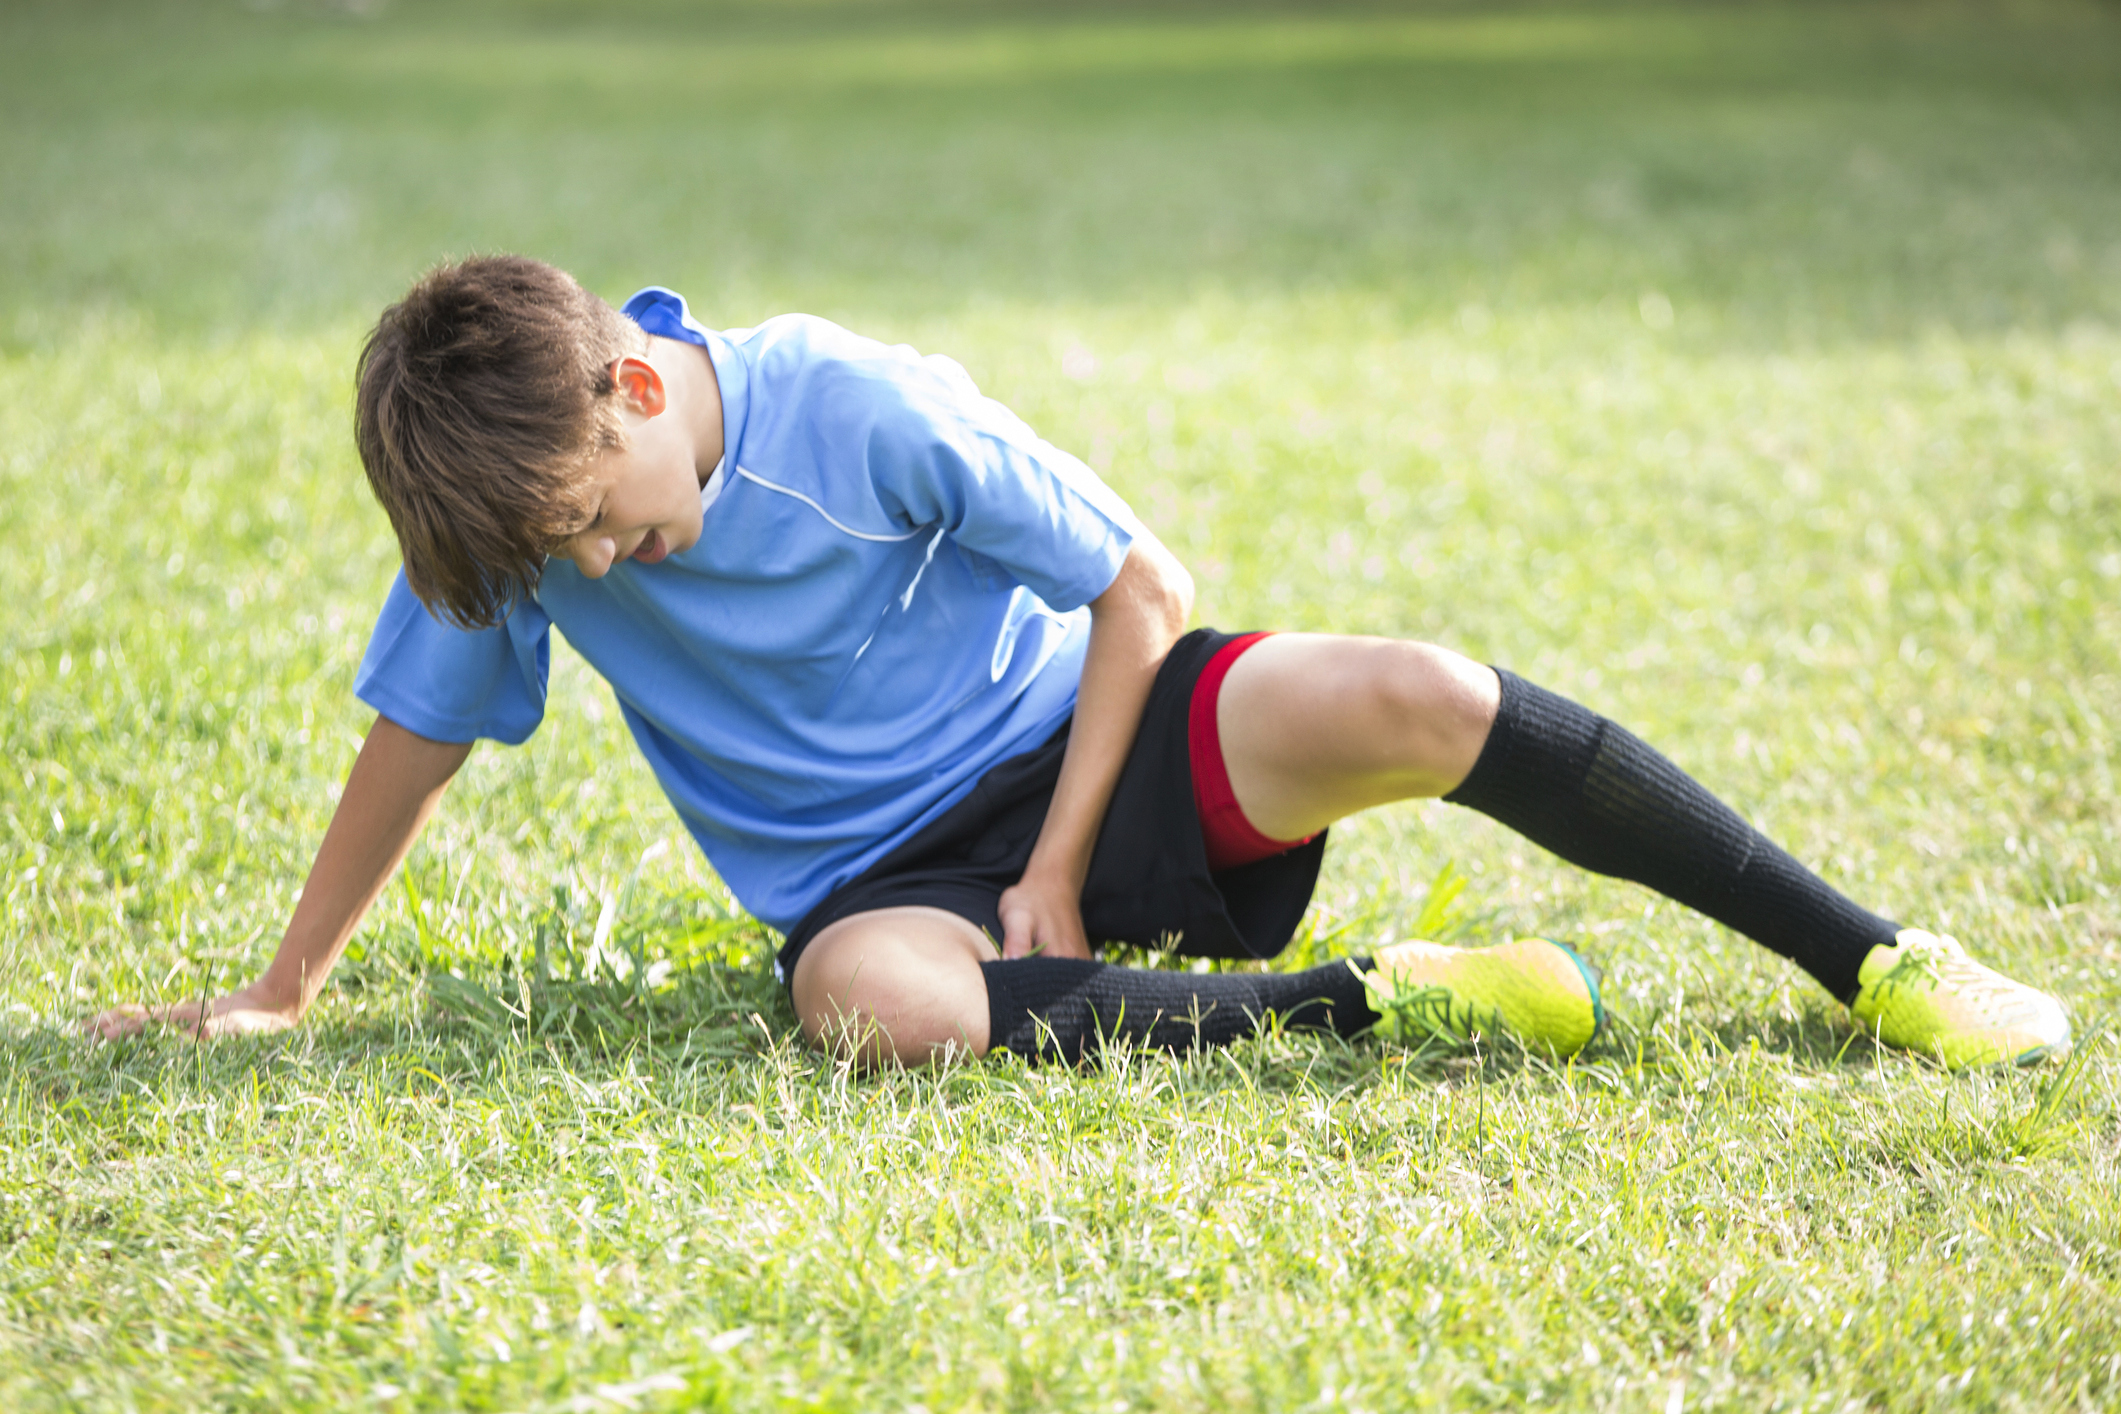 Boy pain. Спорт. Спортивный травматизм у детей. Мальчик в шортах футболист. Травмы в детском спорте.